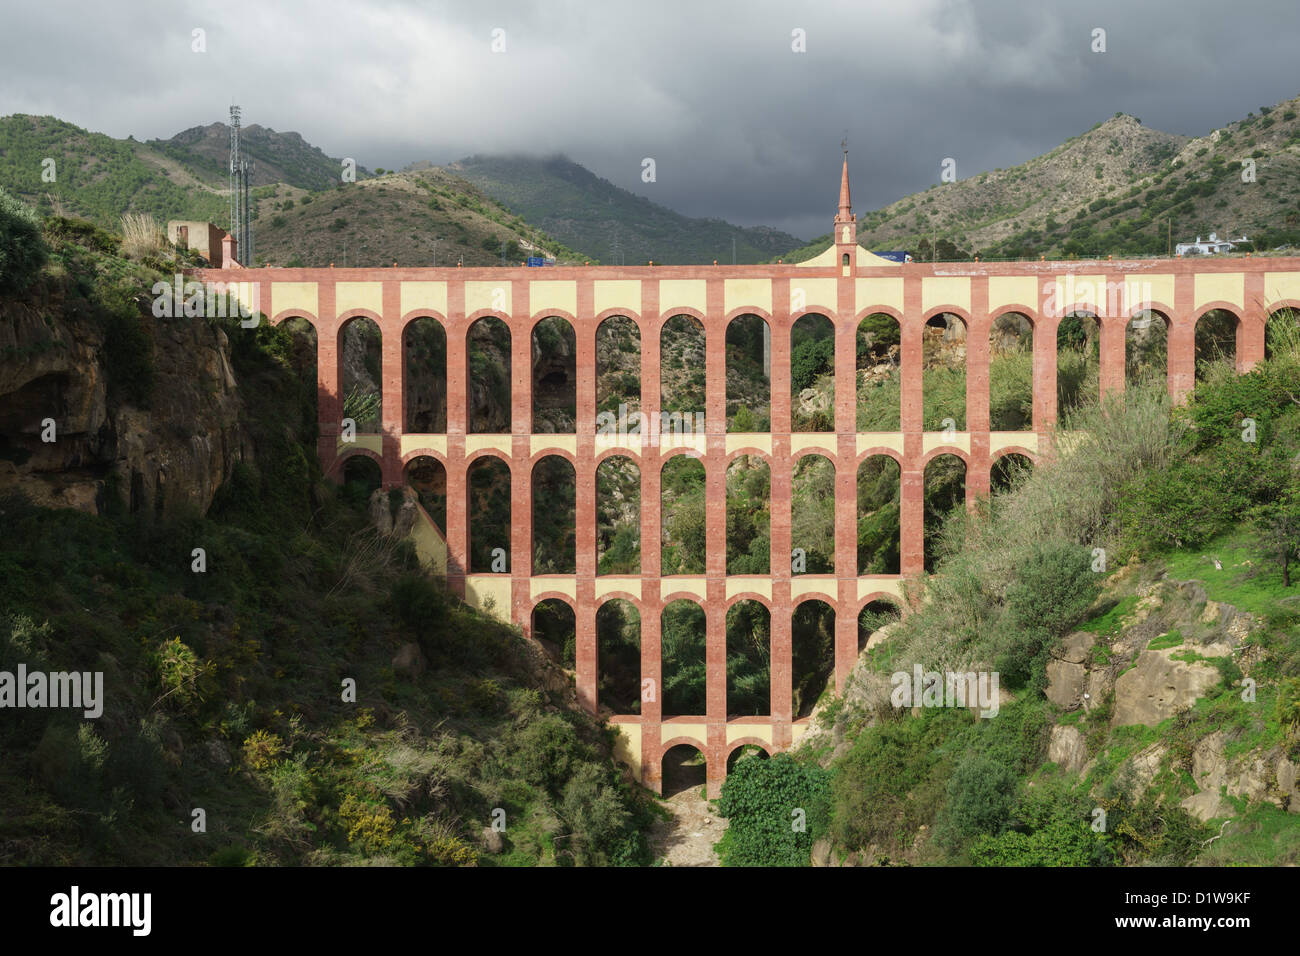 Espagne, Andalousie - l'aqueduc Águila, construite par un entrepreneur local dans le 19ème siècle. Banque D'Images